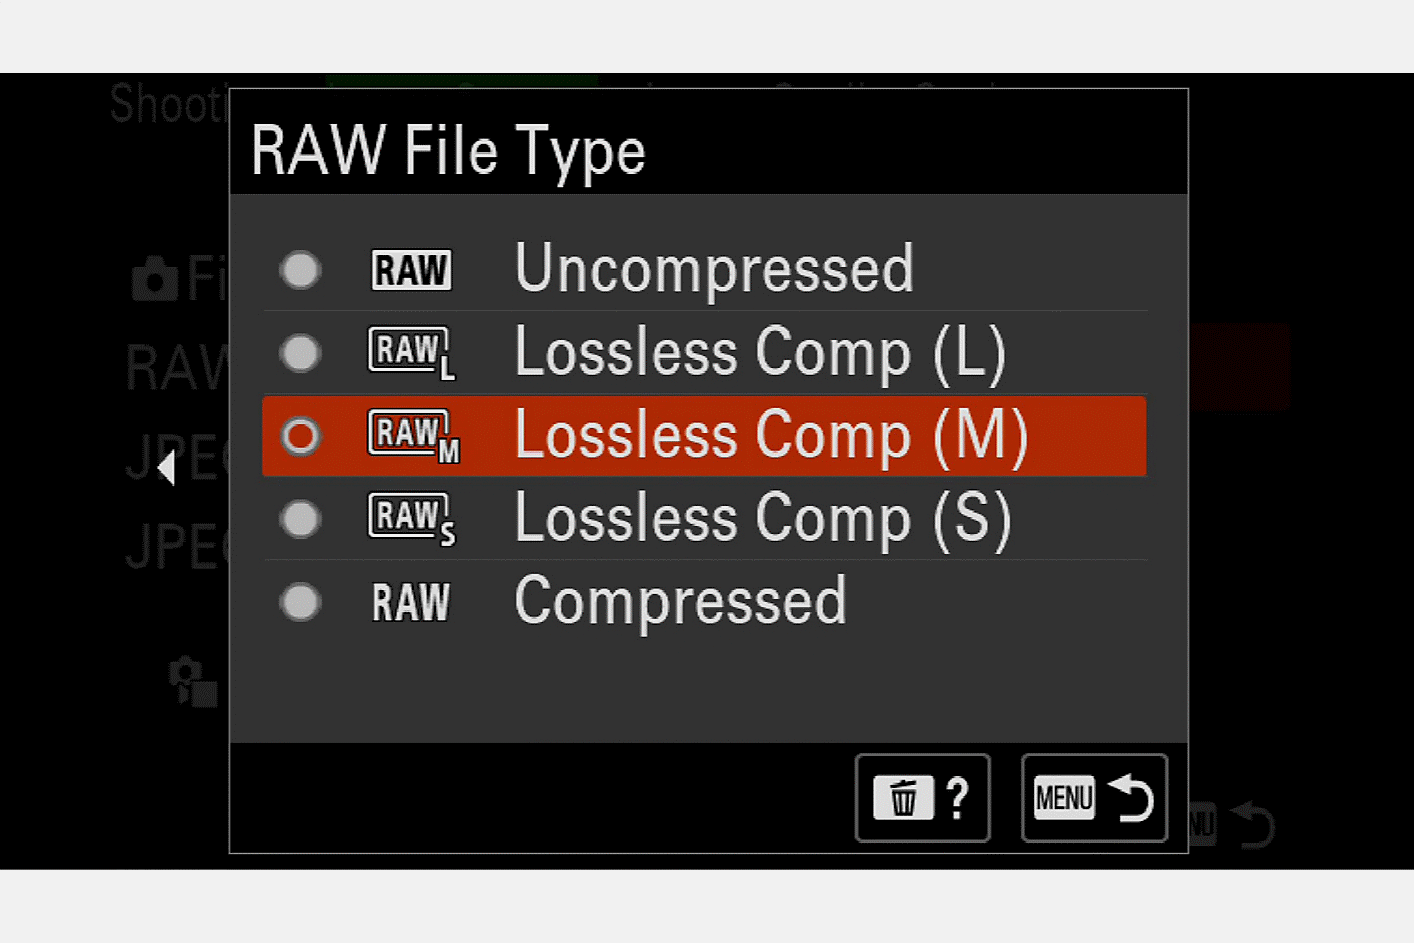 صورة لشاشة الكاميرا لاختيار نوع ملف RAW